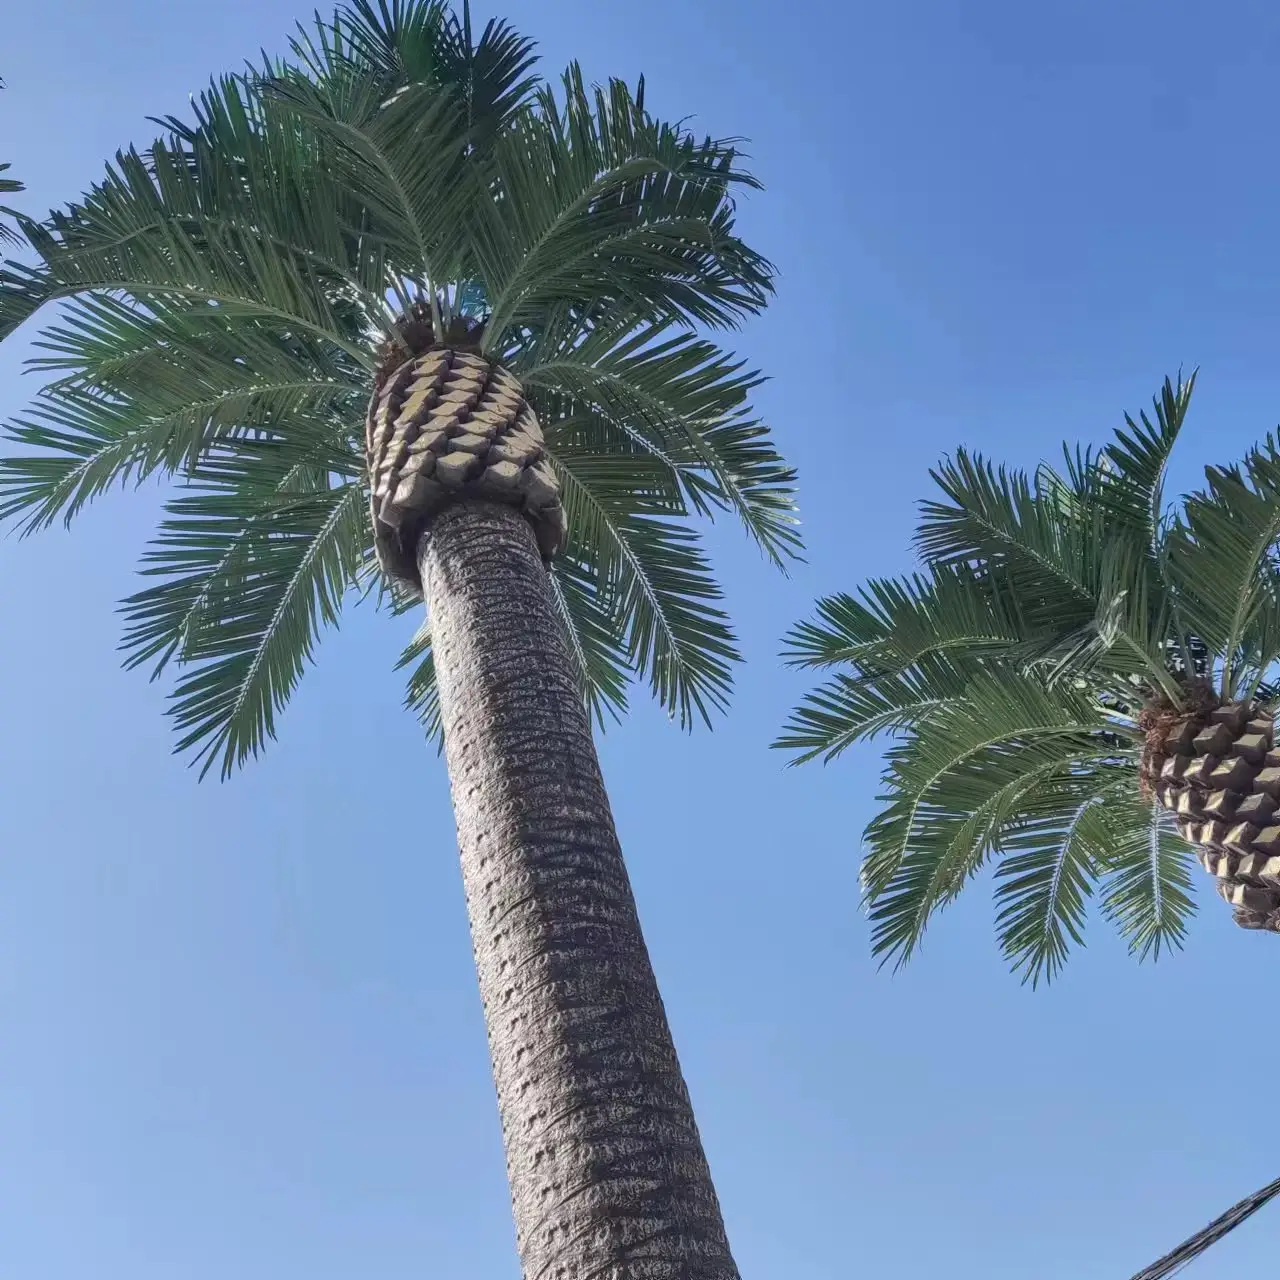 King palm tree palmier de date artificiel, decorazione esterna 8 metri di altezza palma da datteri in plastica artificiale